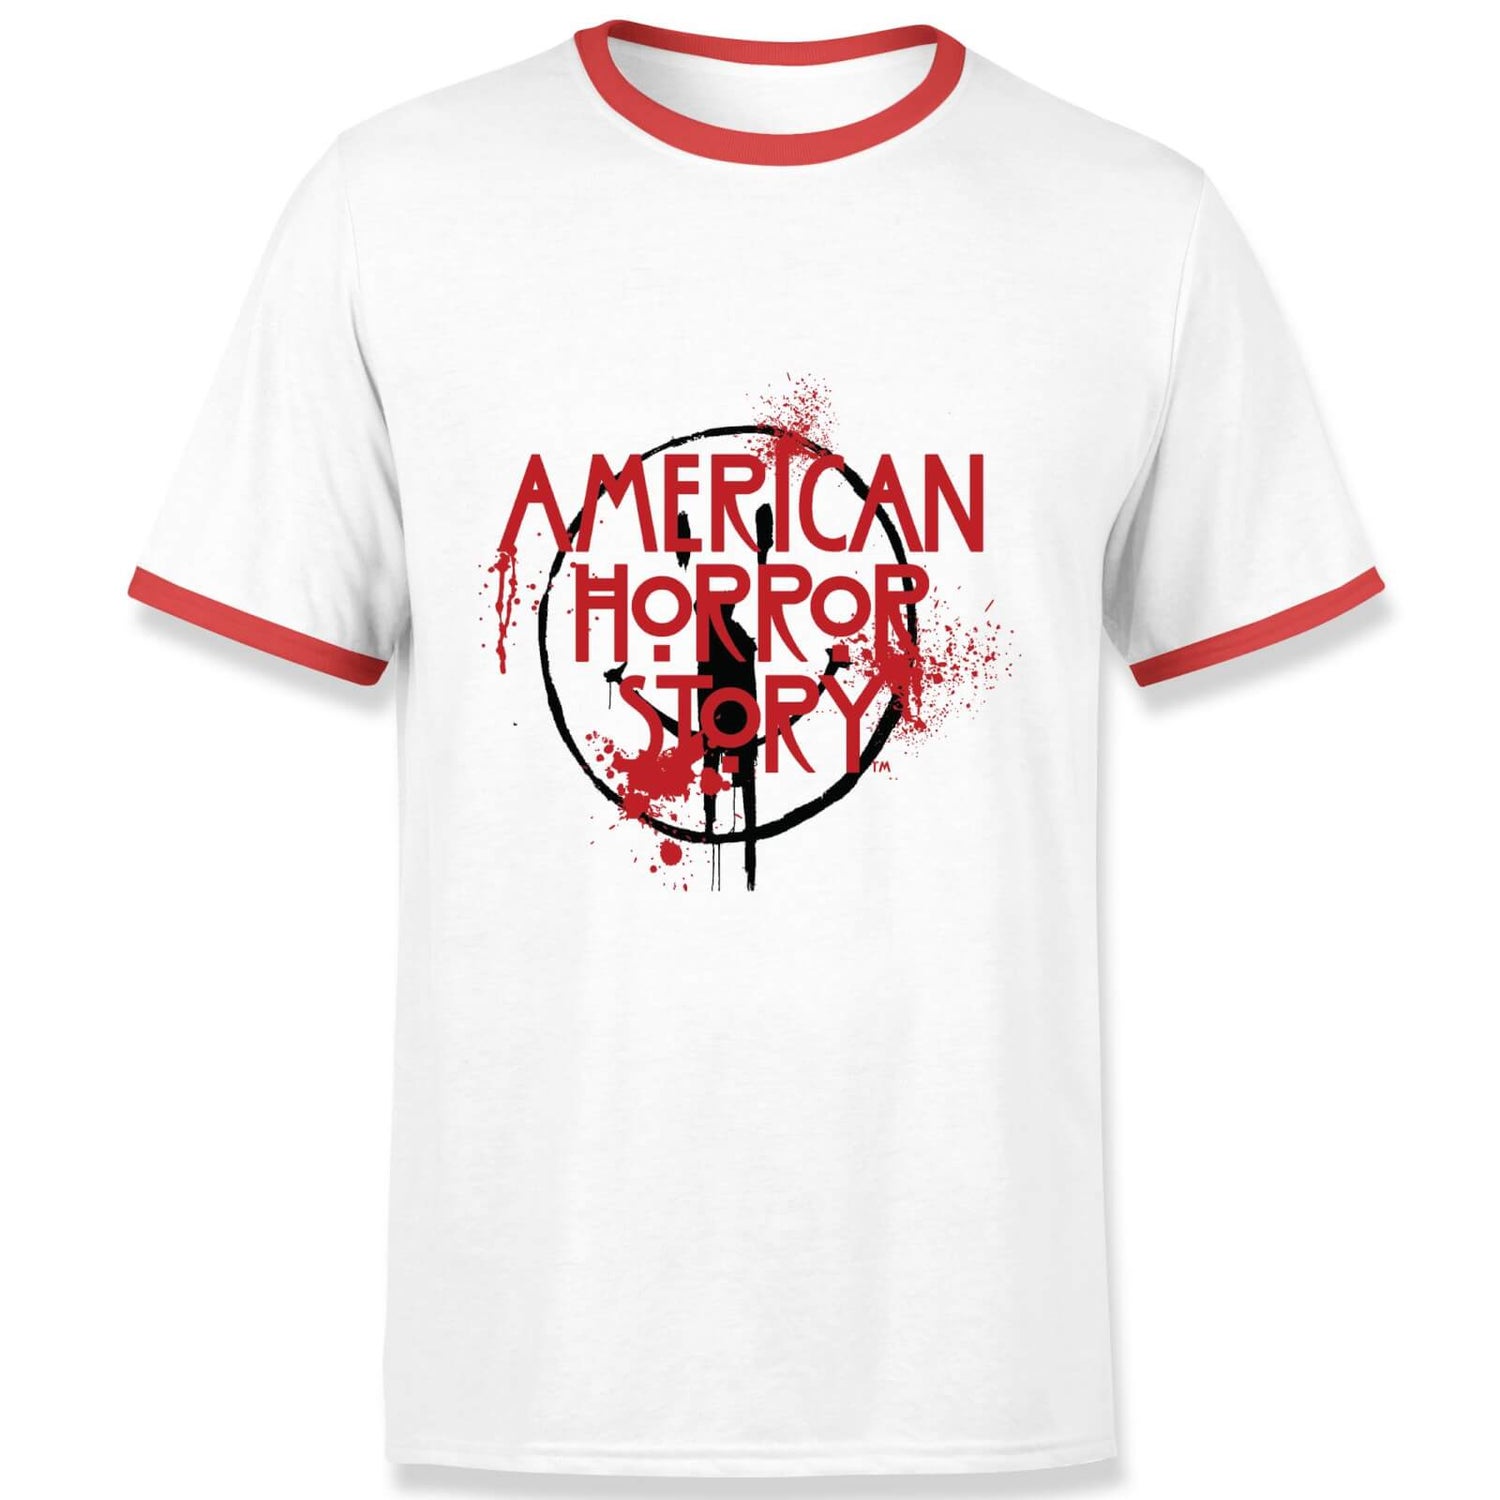 American Horror Story Smiley Splatter Men's Ringer T-Shirt - White/Red